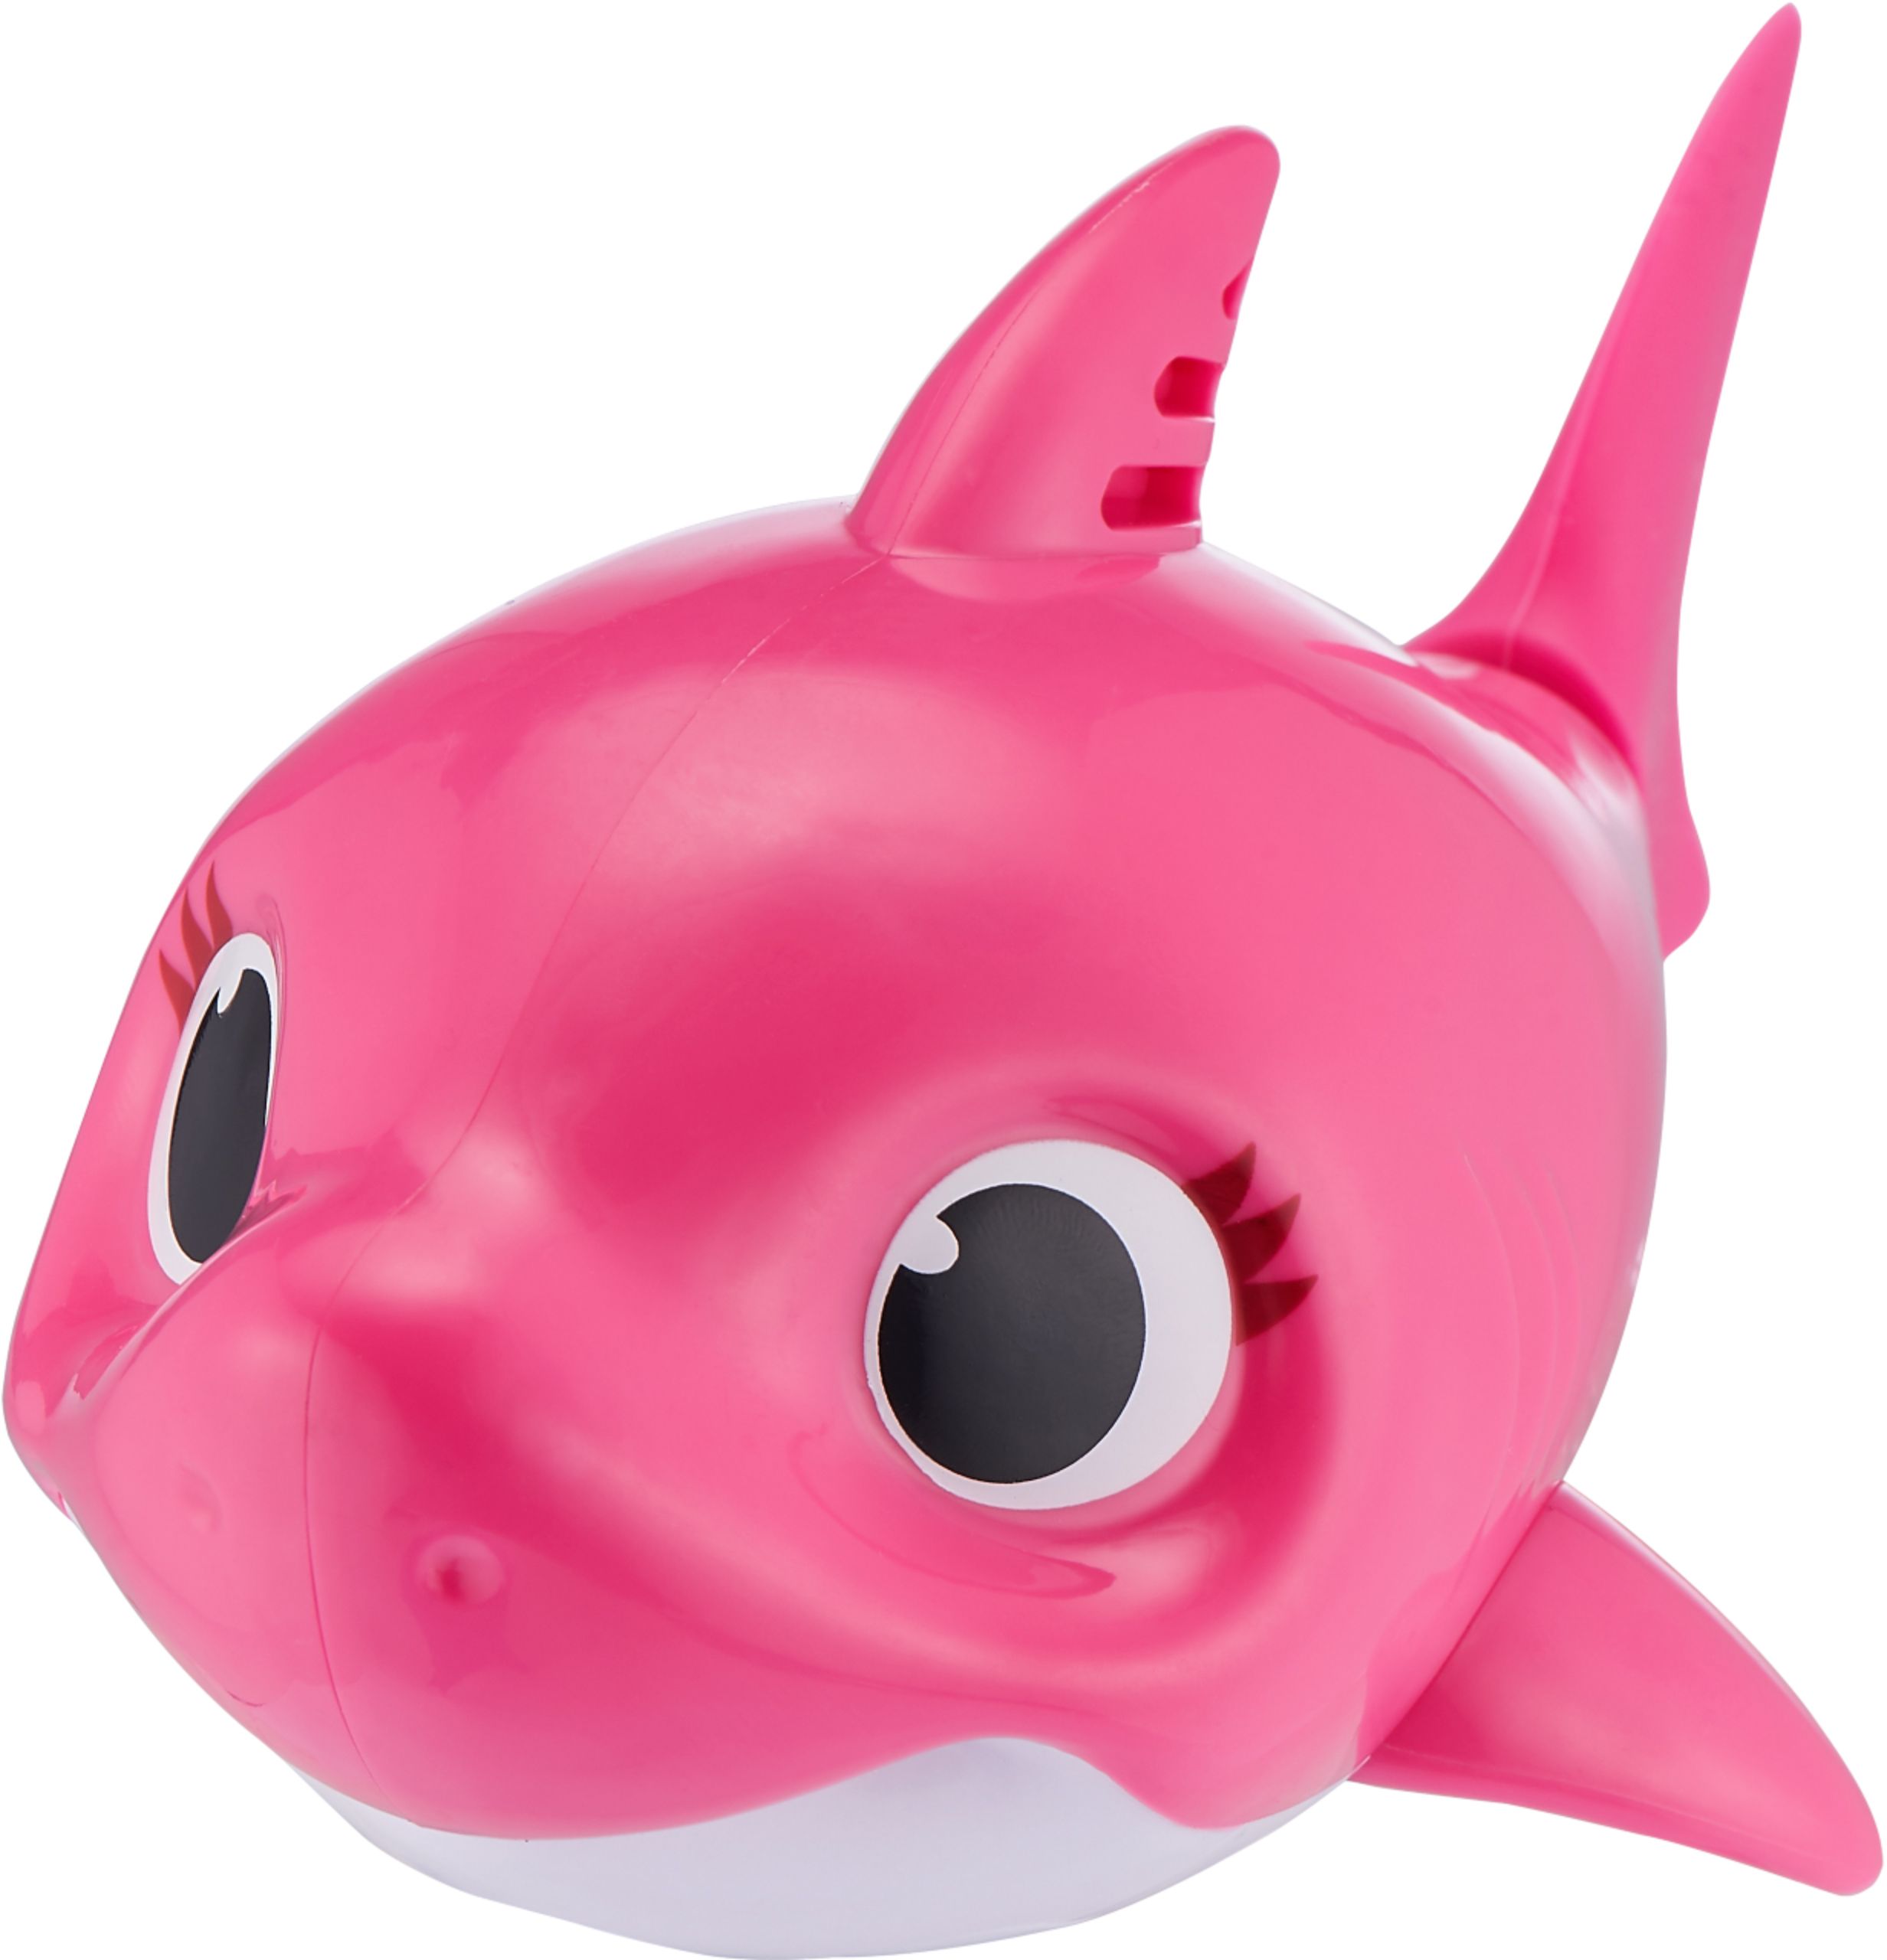 ZURU 25282-S003 Baby Shark Sing and Swim Bath Toy for sale online